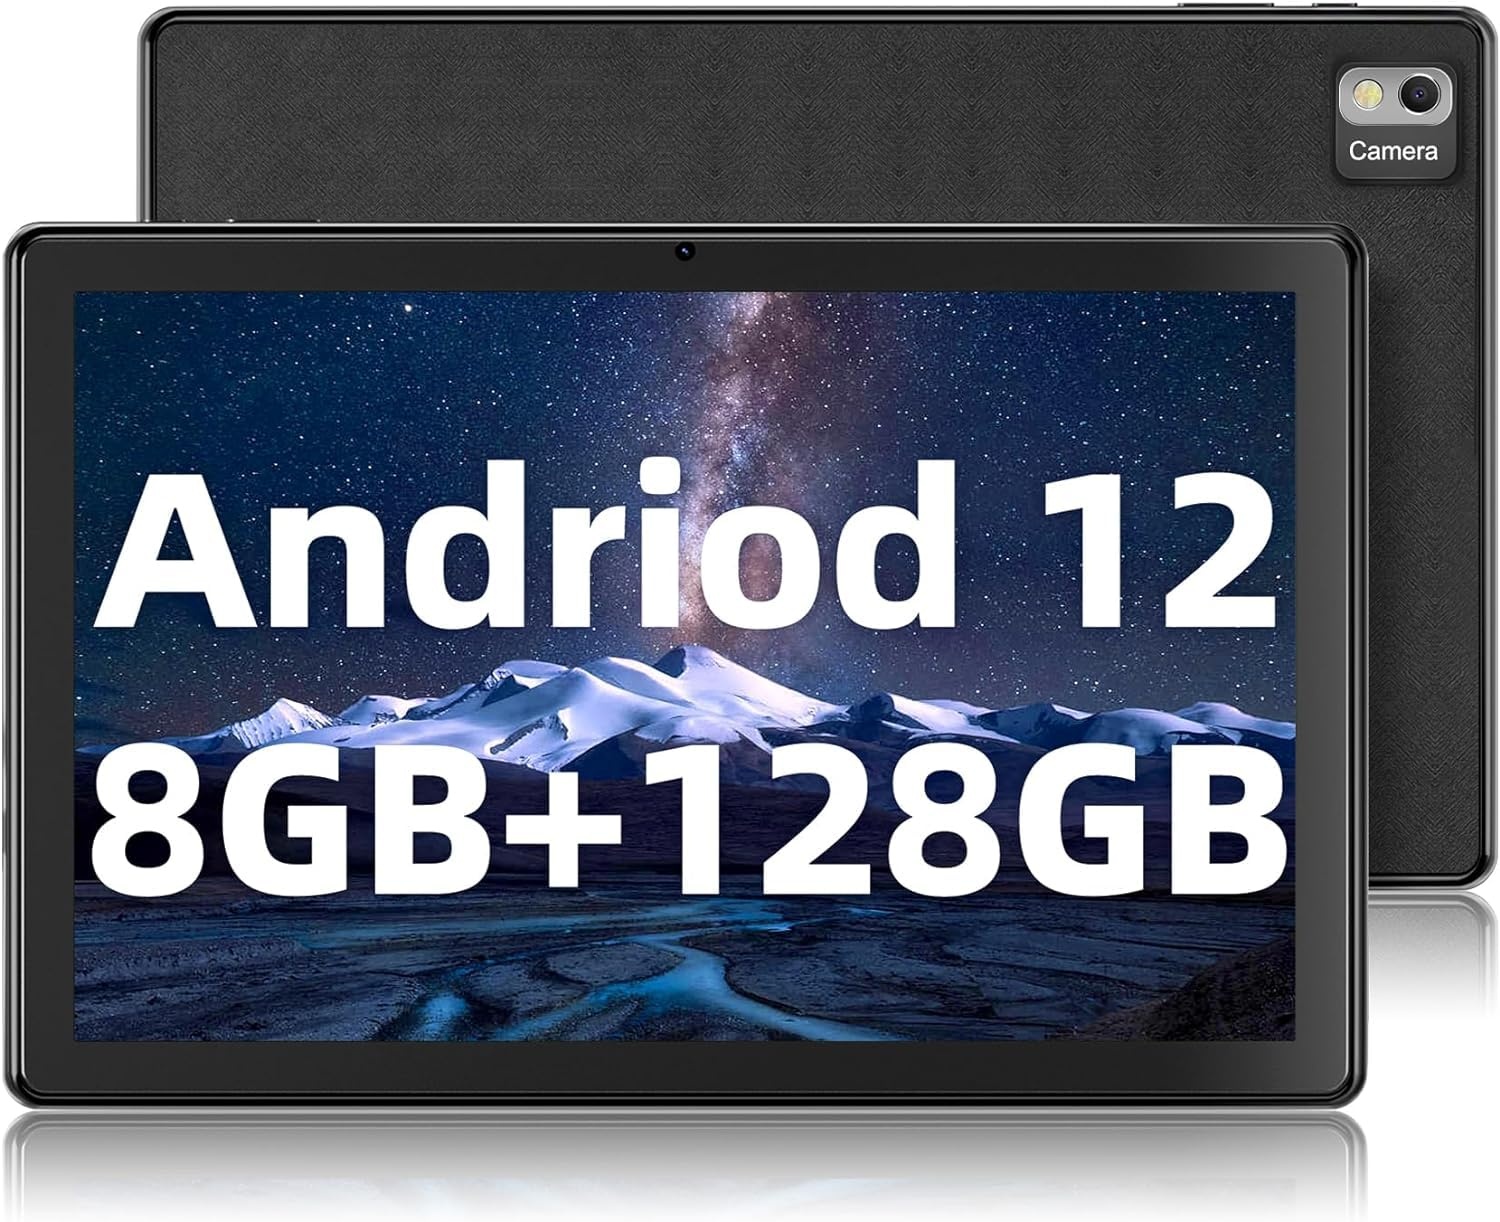 SGIN Tablet 10,1 Zoll 8 GB RAM 128 GB ROM, Android 11 Octa-Core 2,0 GHz Tablet, 1280 x 800 IPS HD, 2 MP + 5 MP Kamera, 7000 mAh, 2,4 G / 5 G WiFi, GPS, TF erweiterbar bis zu 128 GB